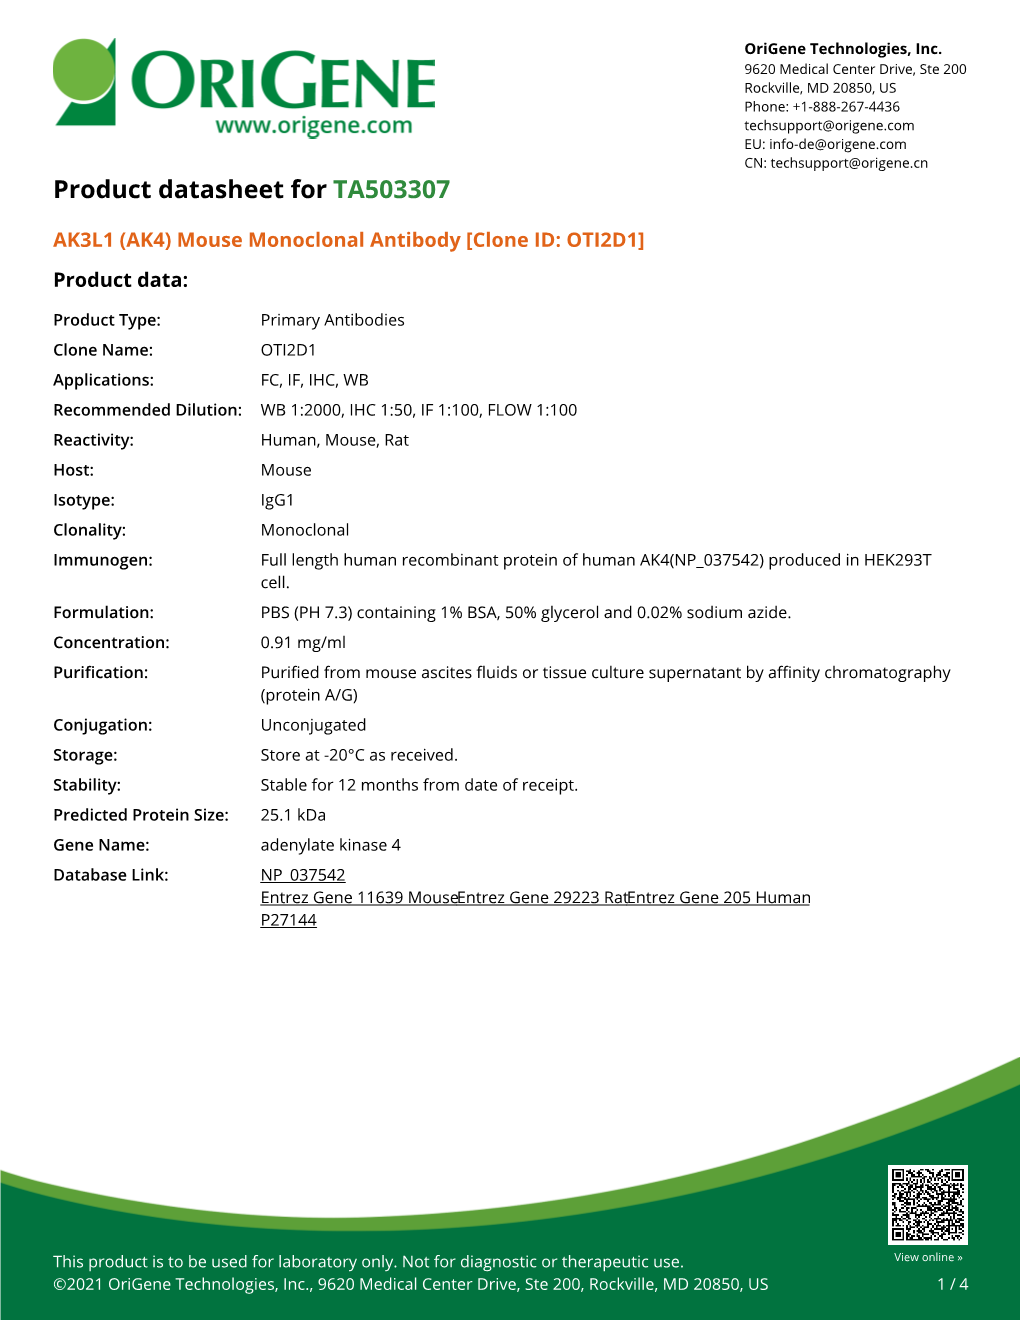 AK3L1 (AK4) Mouse Monoclonal Antibody [Clone ID: OTI2D1] Product Data